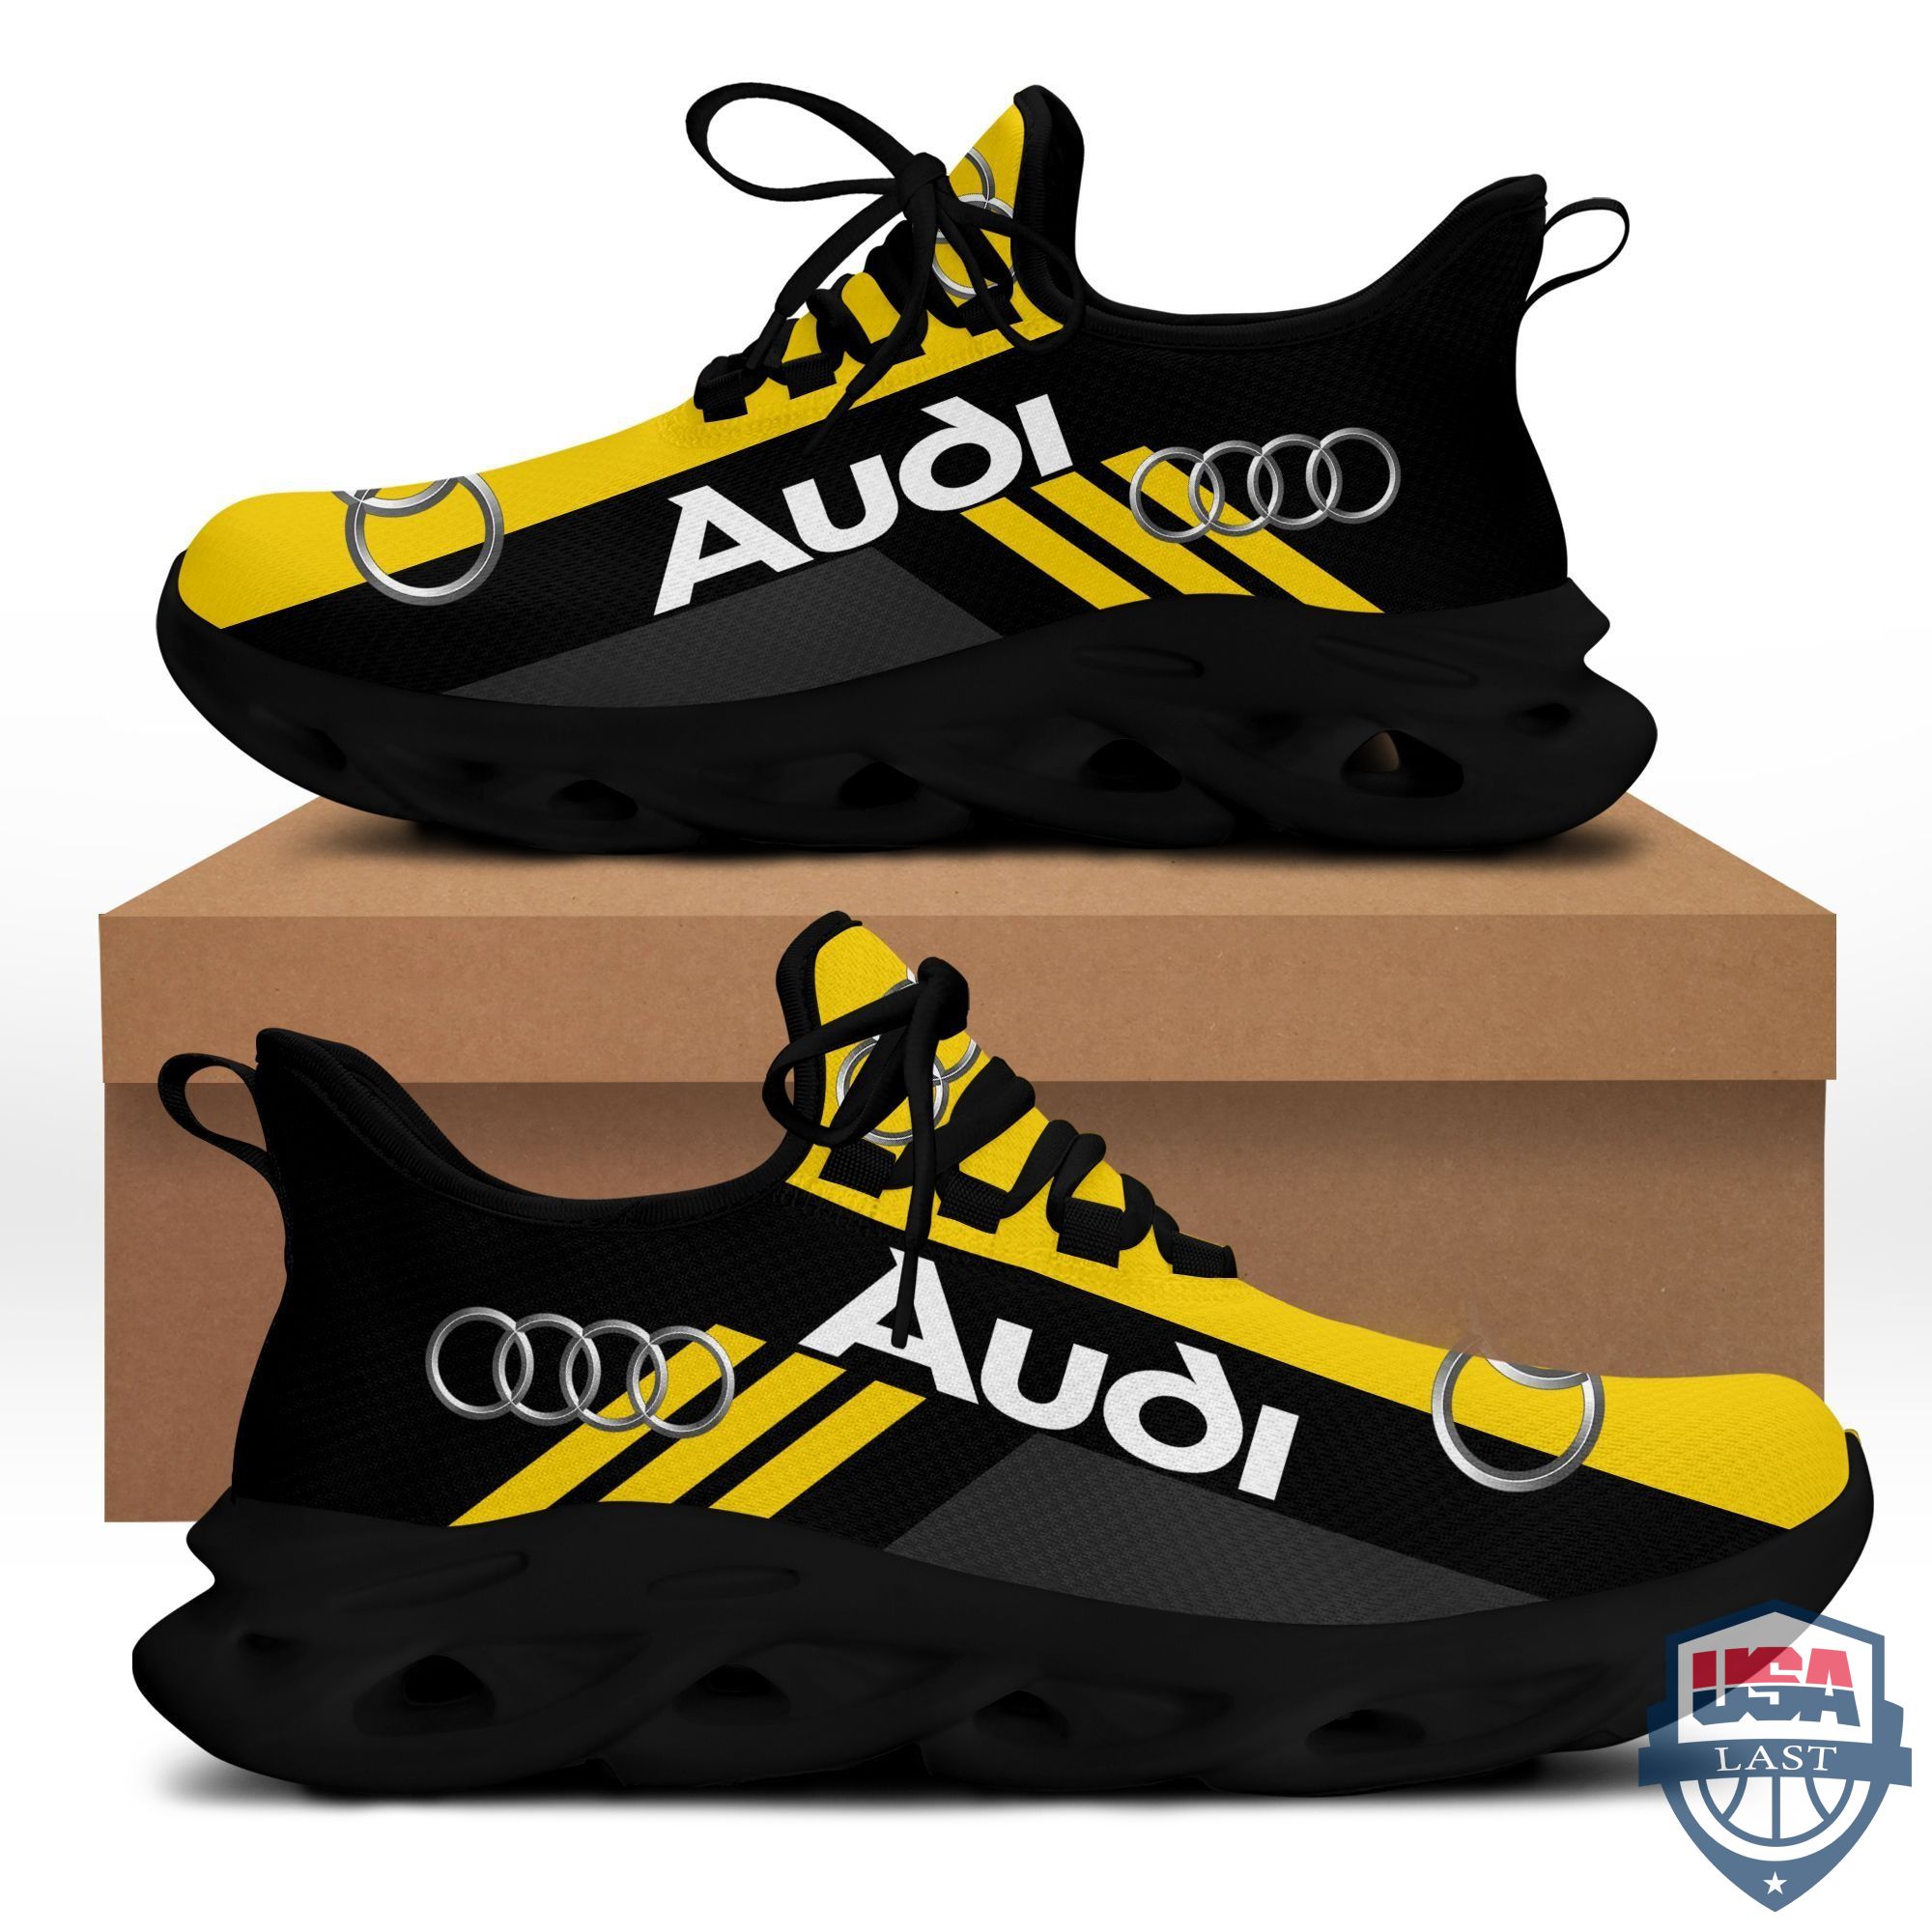 Audi Sneaker Max Soul Shoes Yellow Version